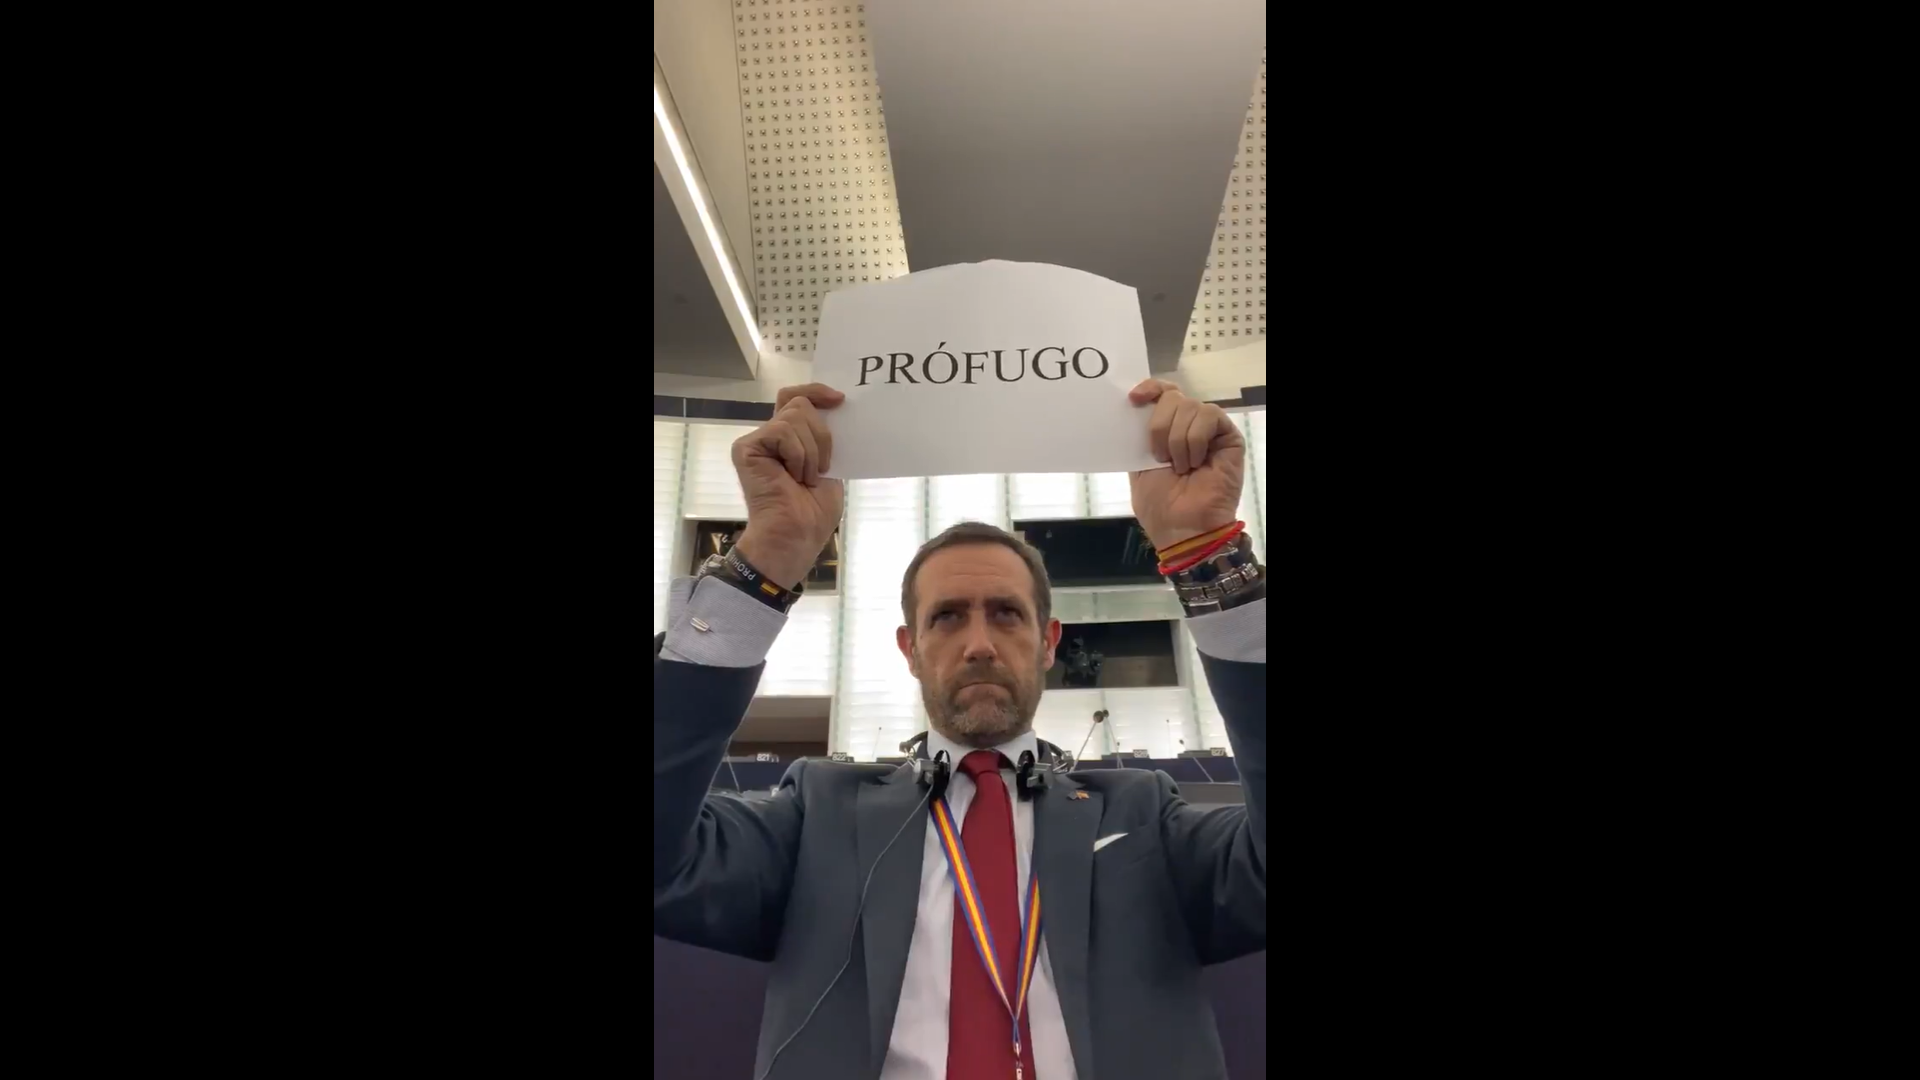 VÍDEO | El número de un eurodiputado de Cs durante la intervención de Puigdemont